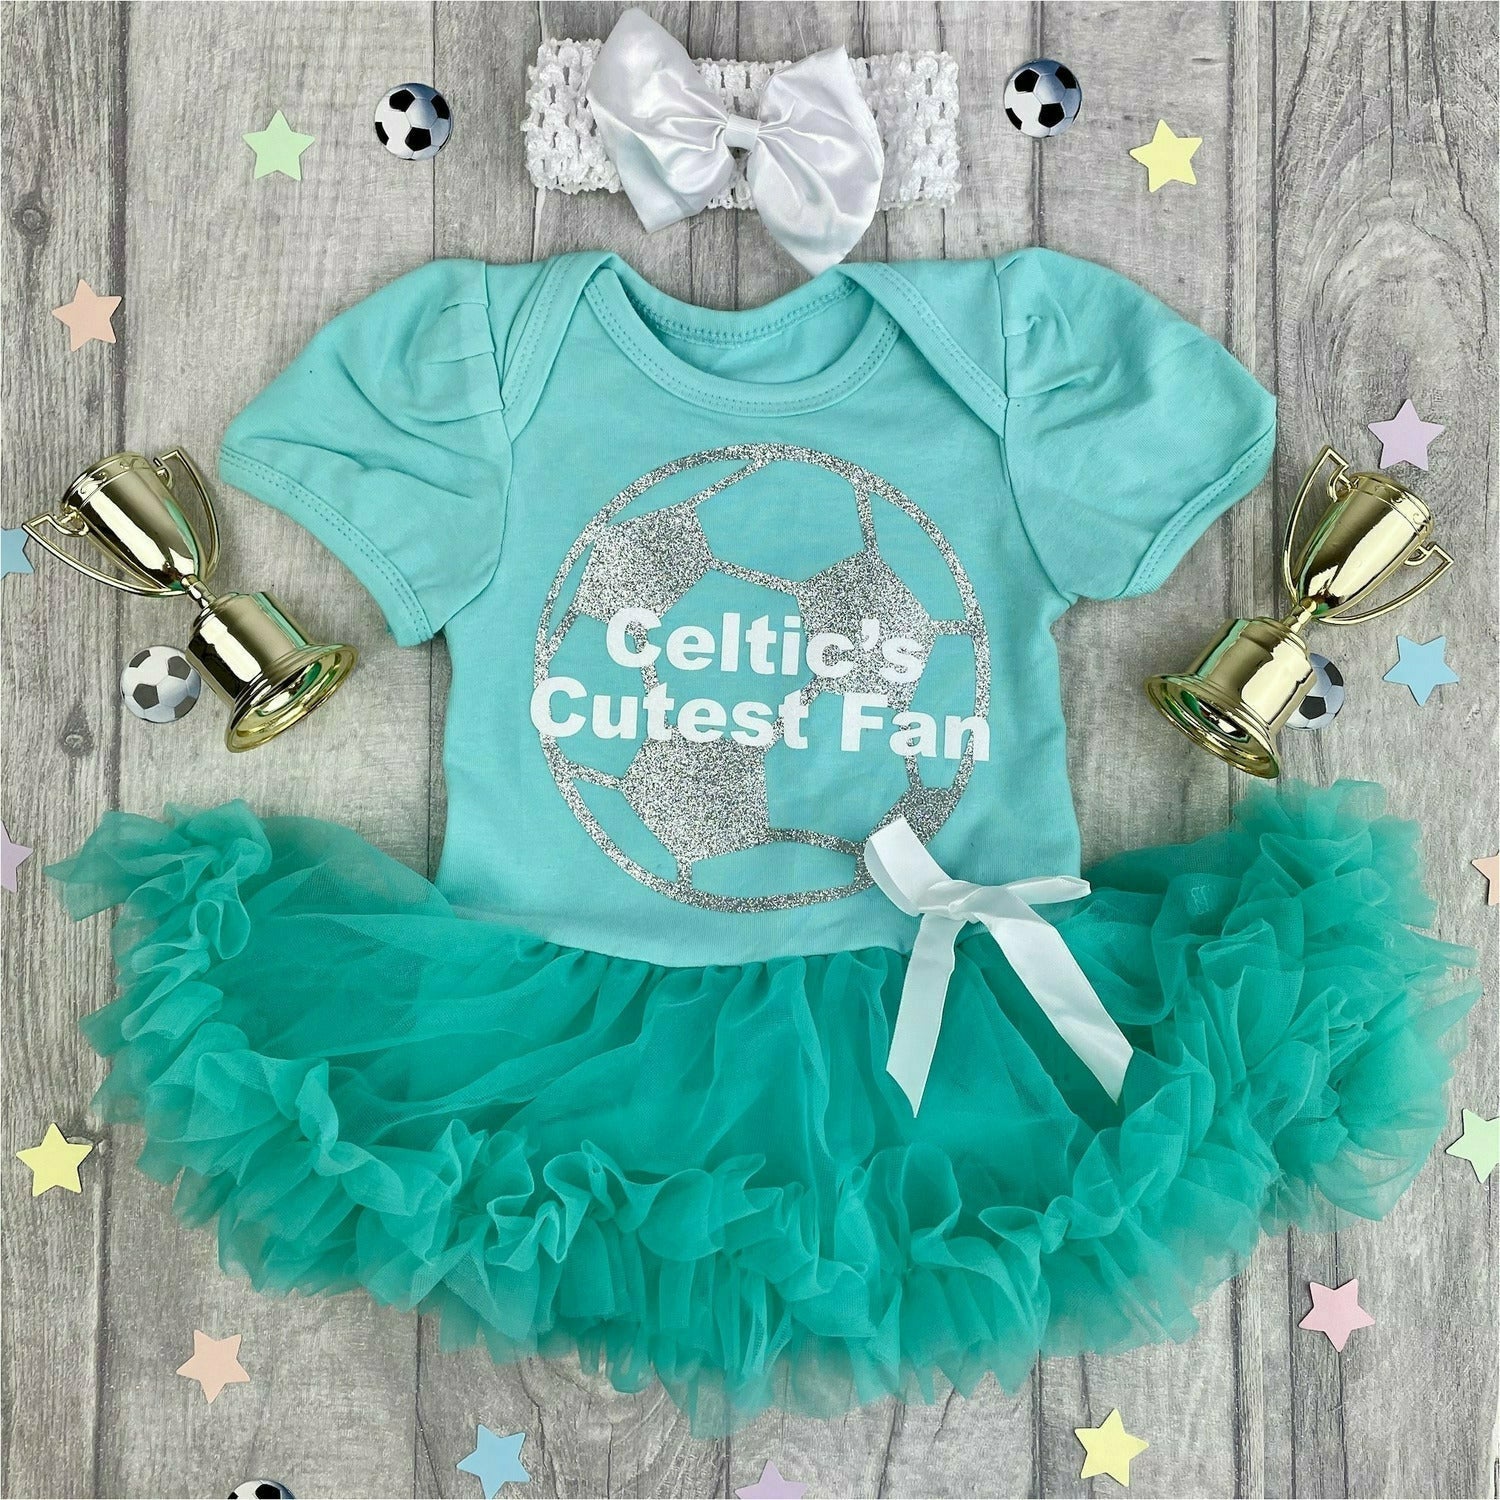 Celtic Baby Clothing -  UK